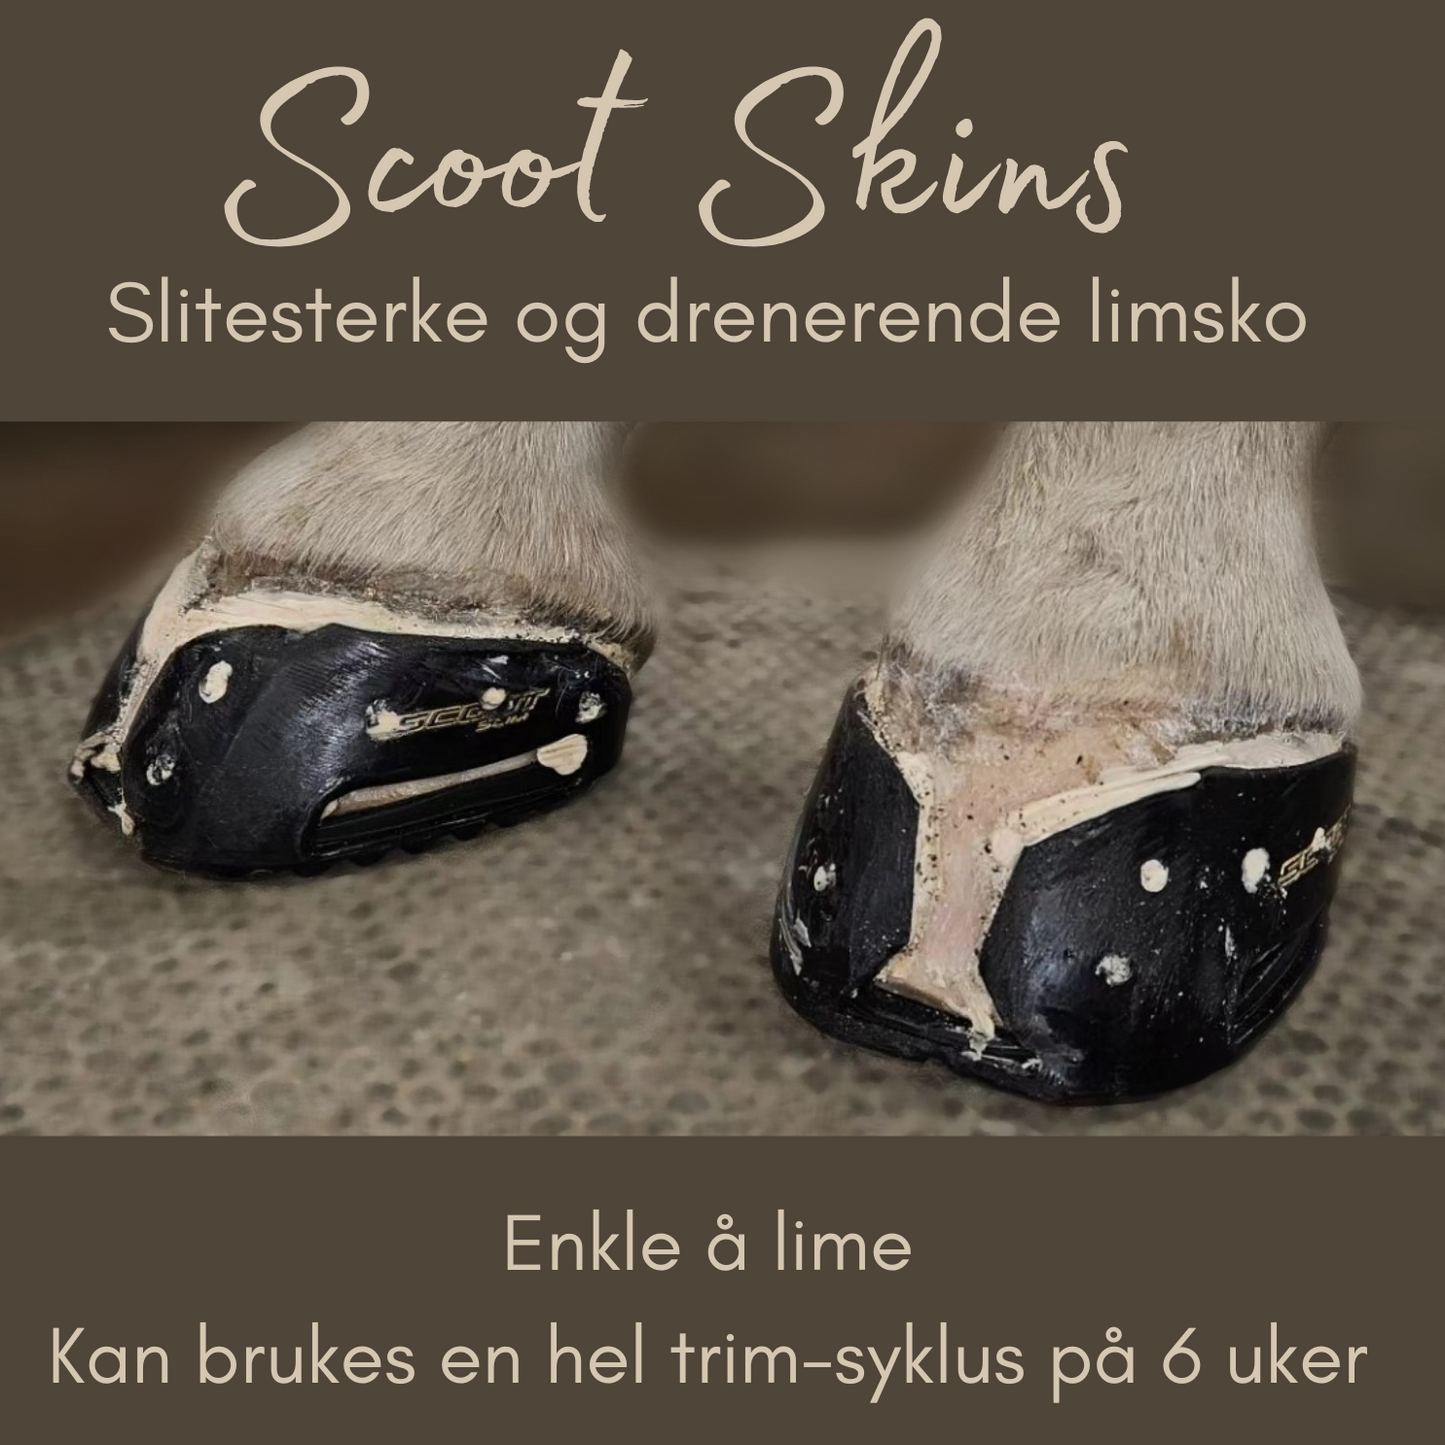 Startkit Scoot Skins limsko - Pakkepris